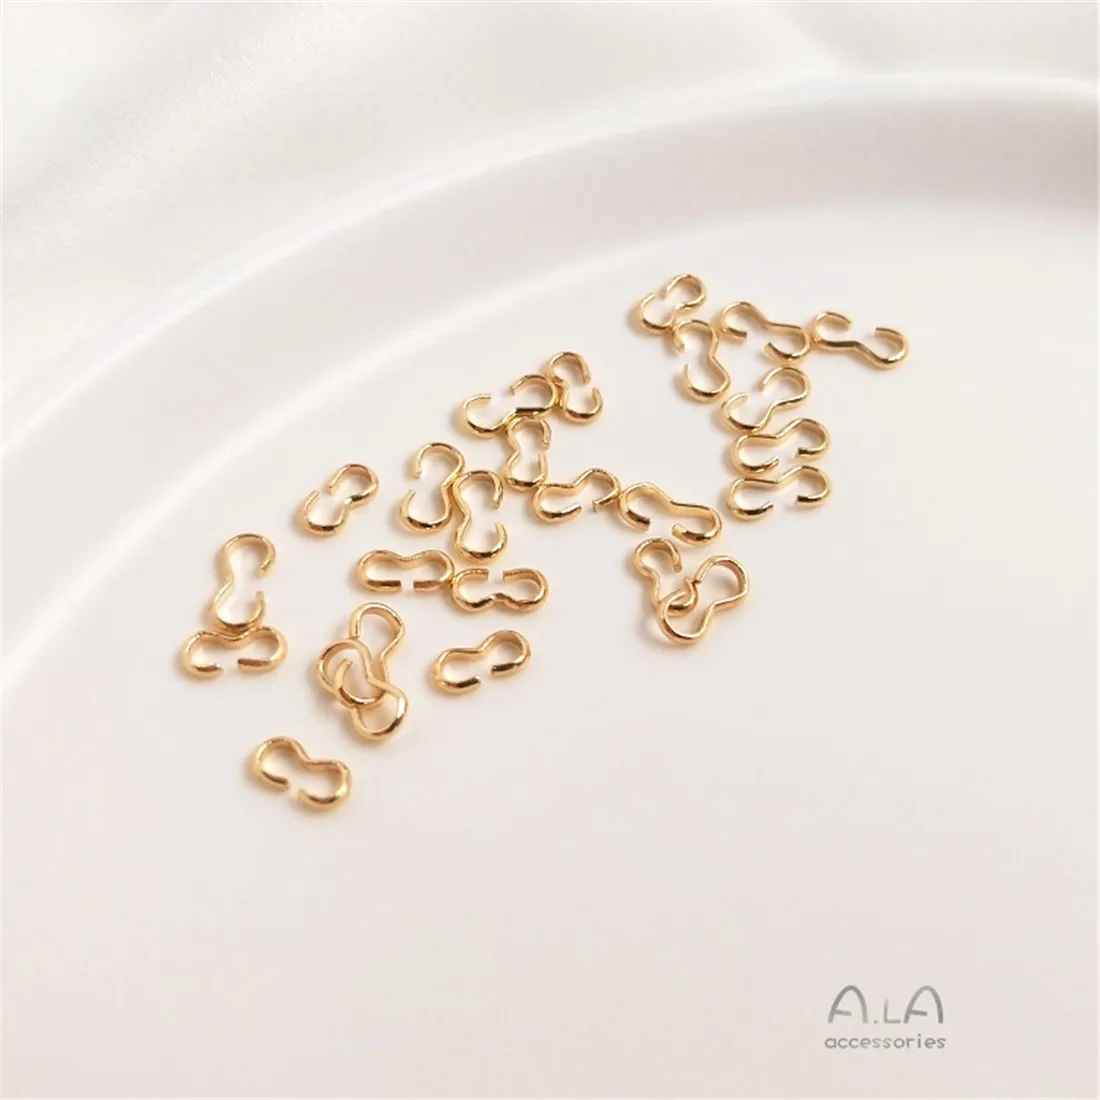 14K Garas Öltöztet Arany nyitó 8-shaped 3-shaped Övcsat DIY handmade ékszer fülbevaló Karcsat Nyakdísz Csatlakozódarab kiegészítők